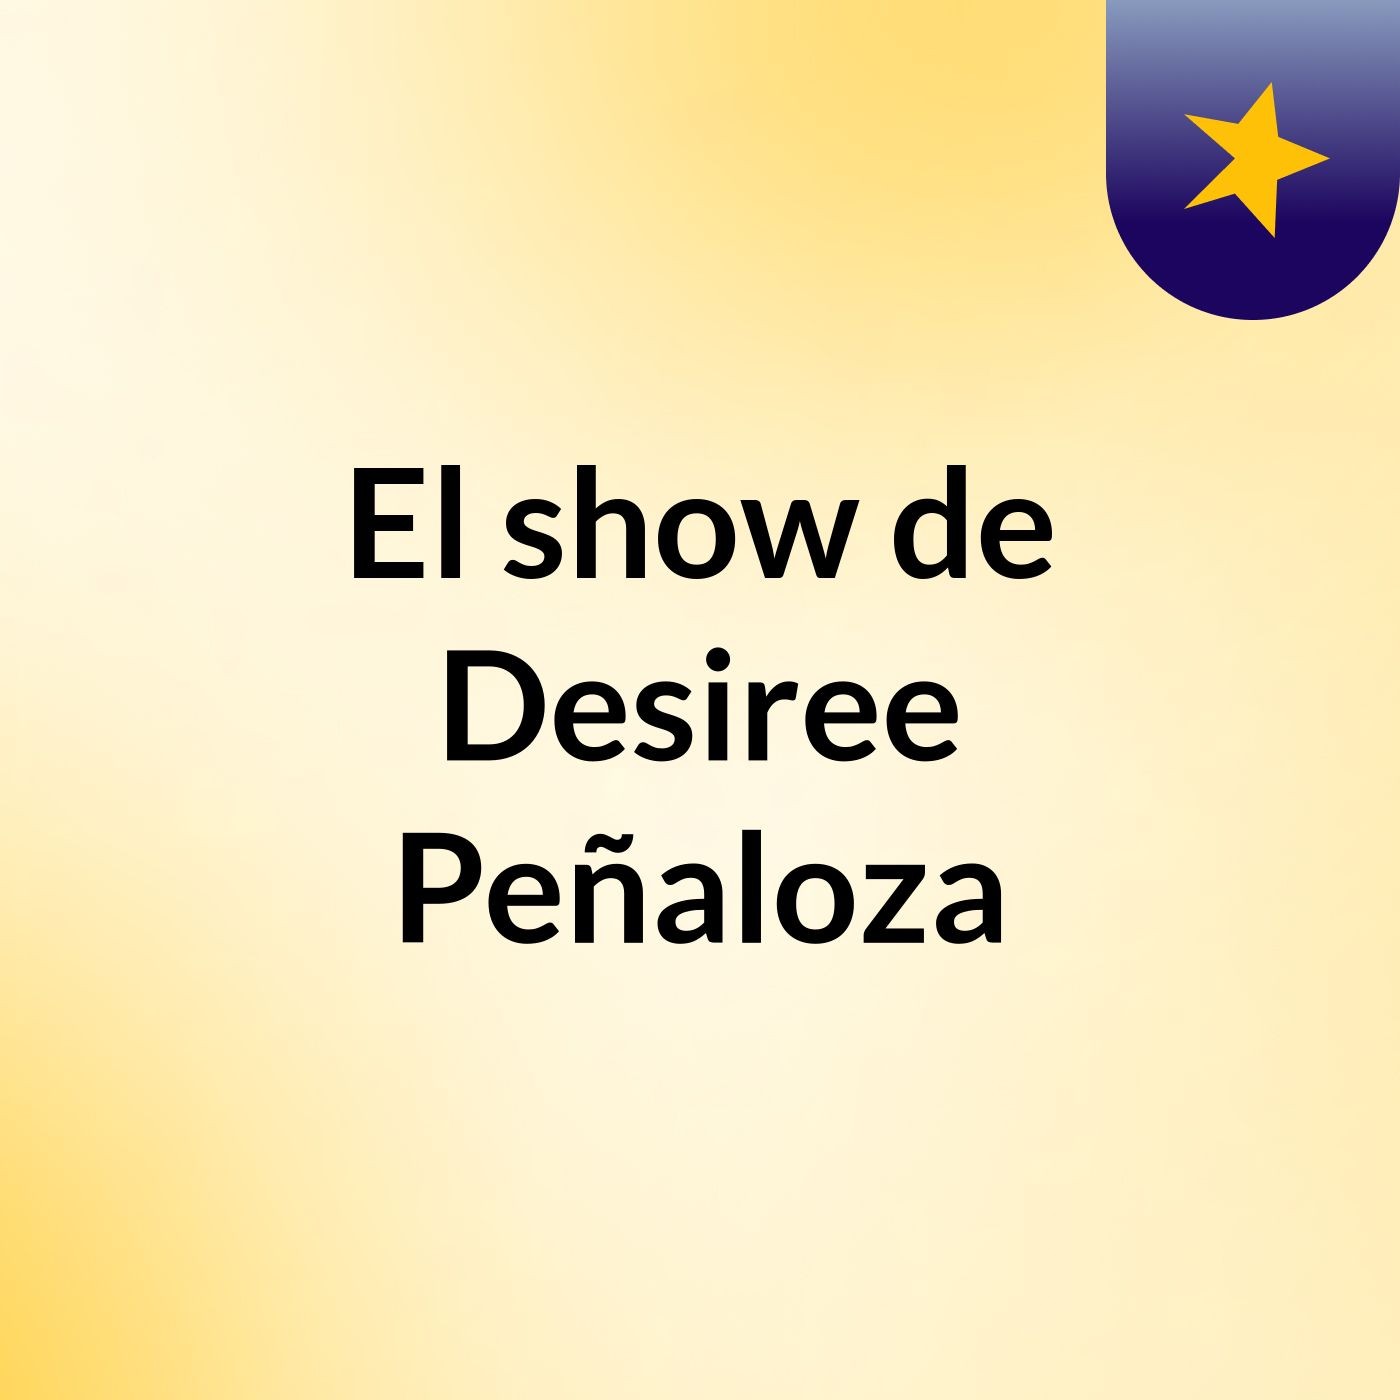 El show de Desiree Peñaloza